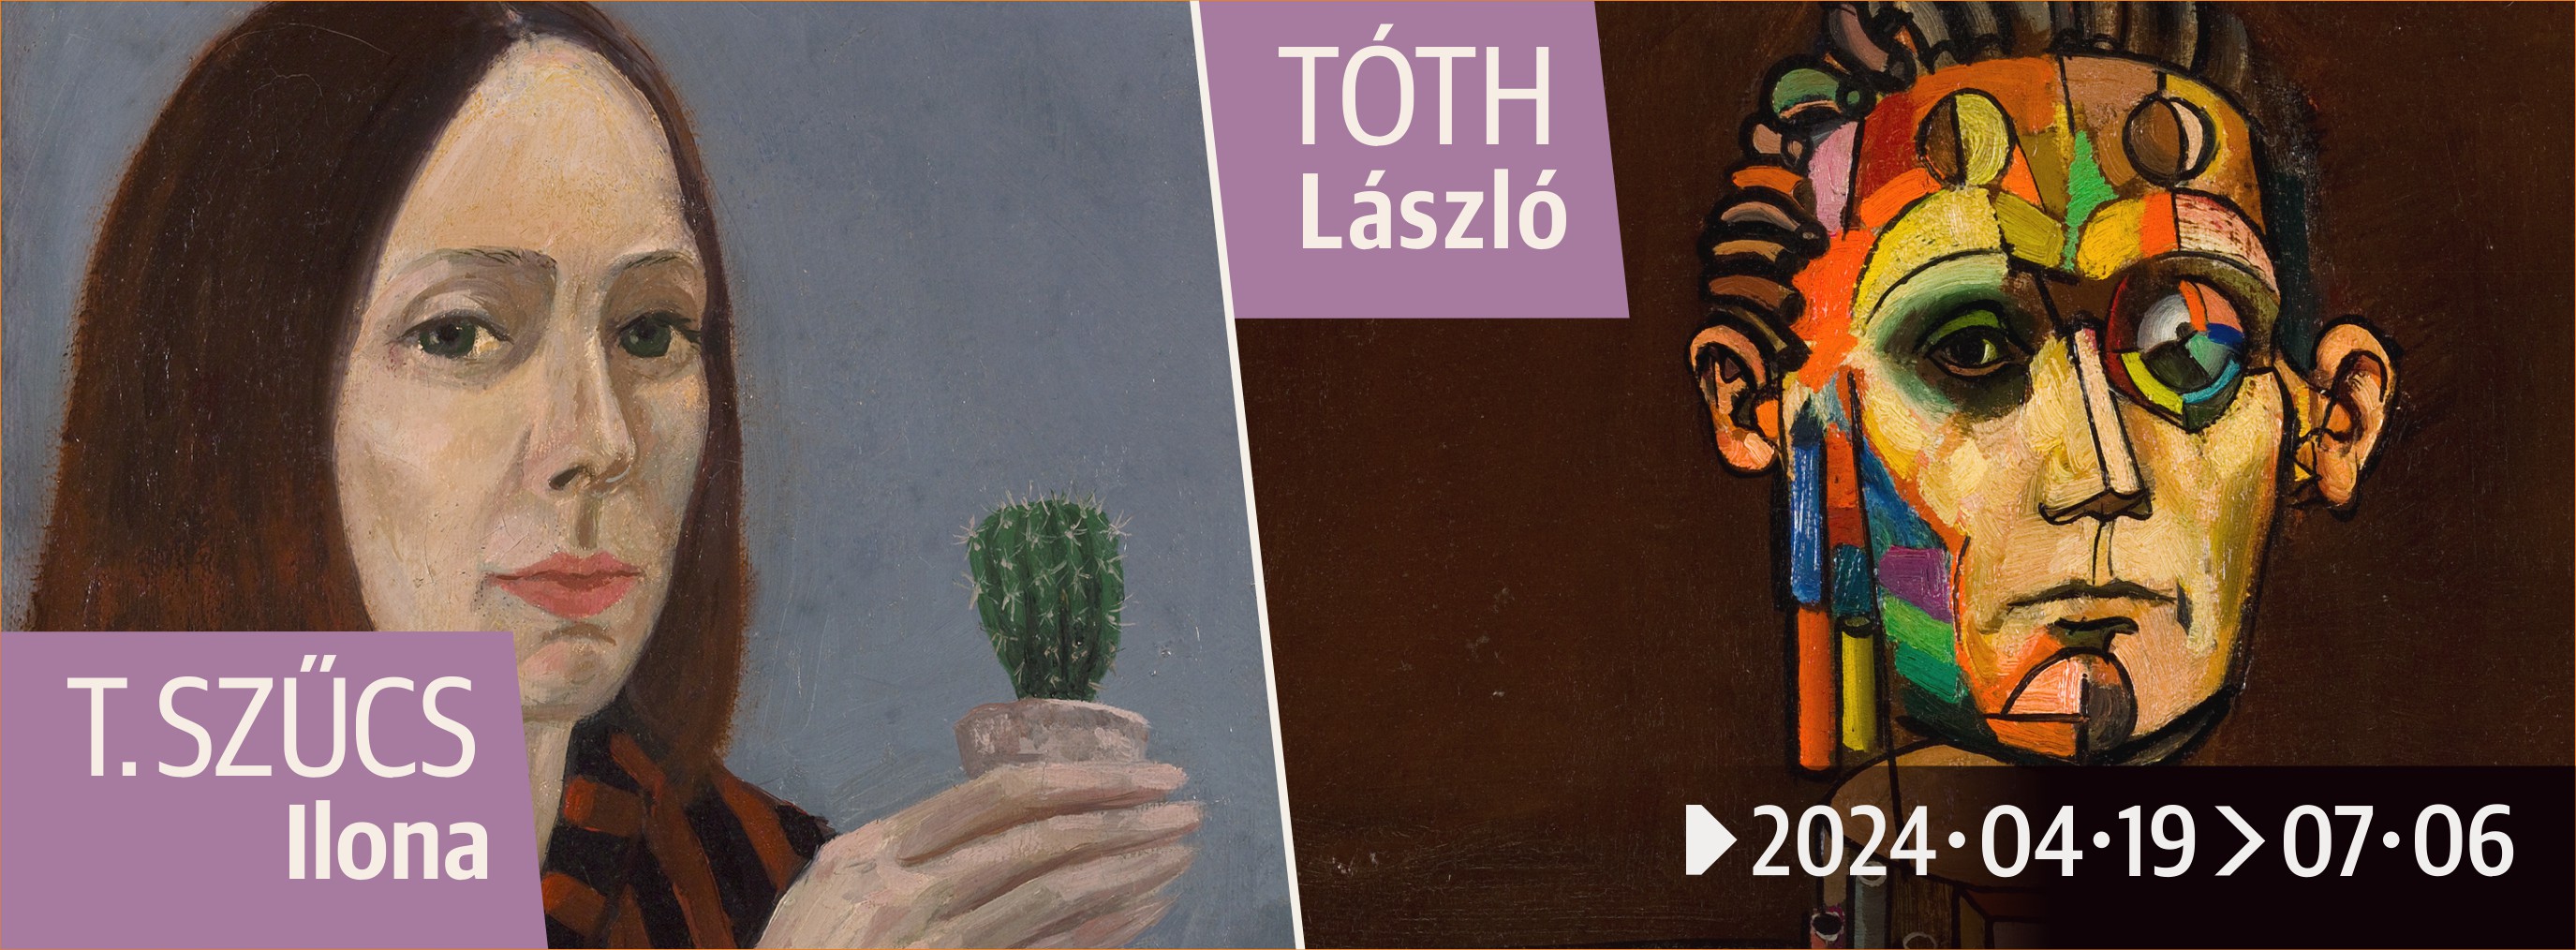 Expoziția pictorilor Ilona TÓTH SZŰCS și László TÓTH